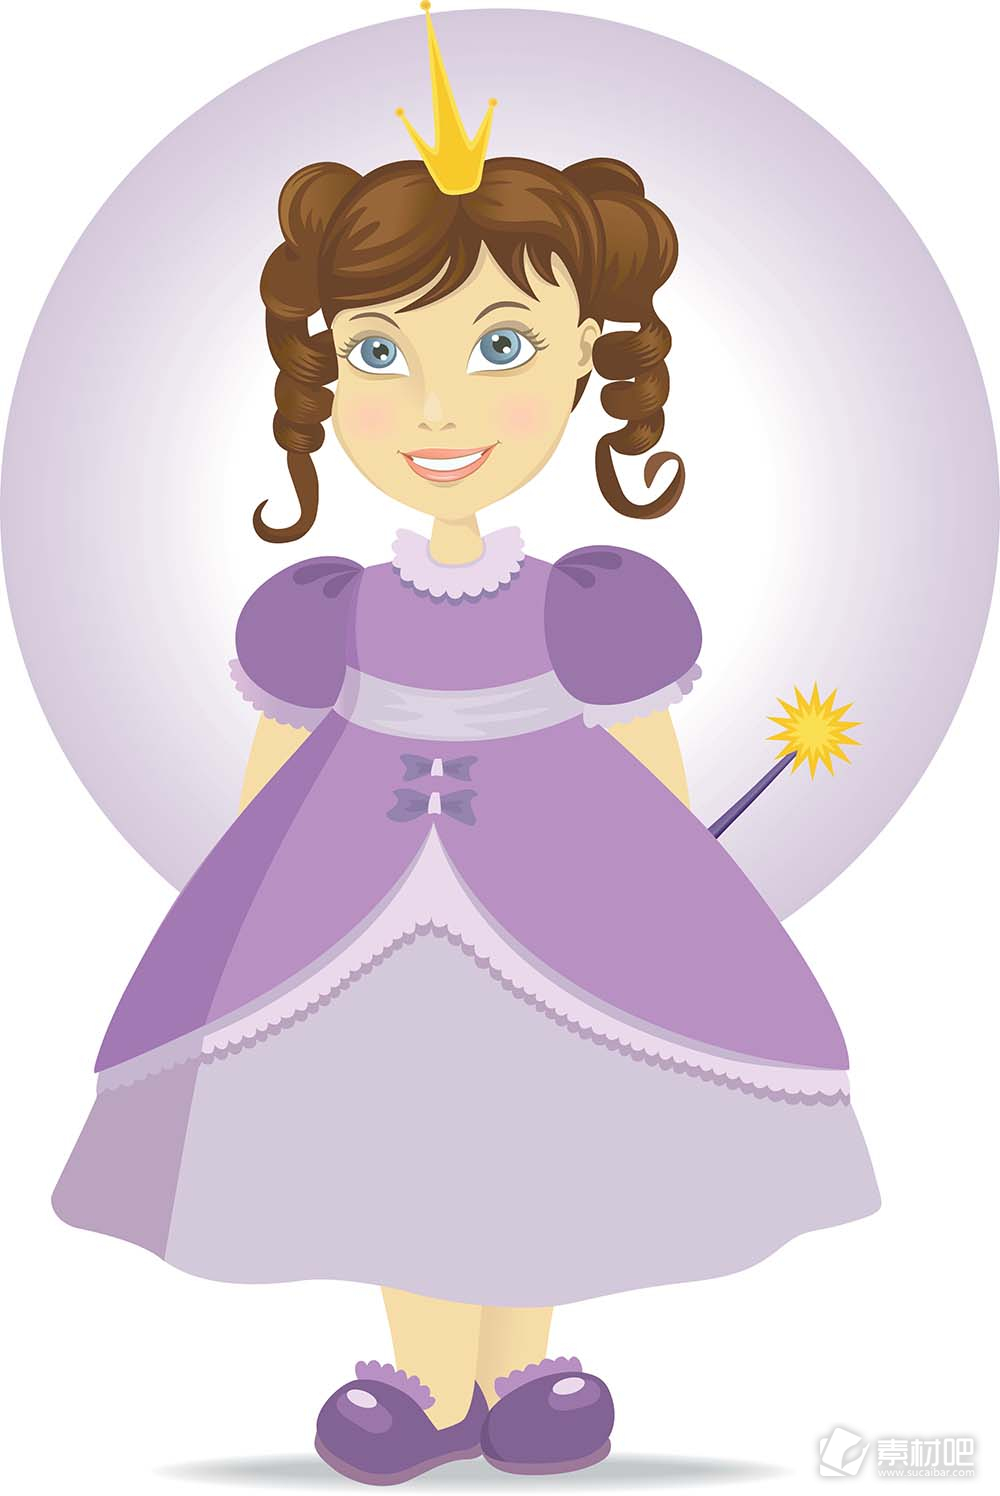 穿紫衣裙的小公主矢量素材